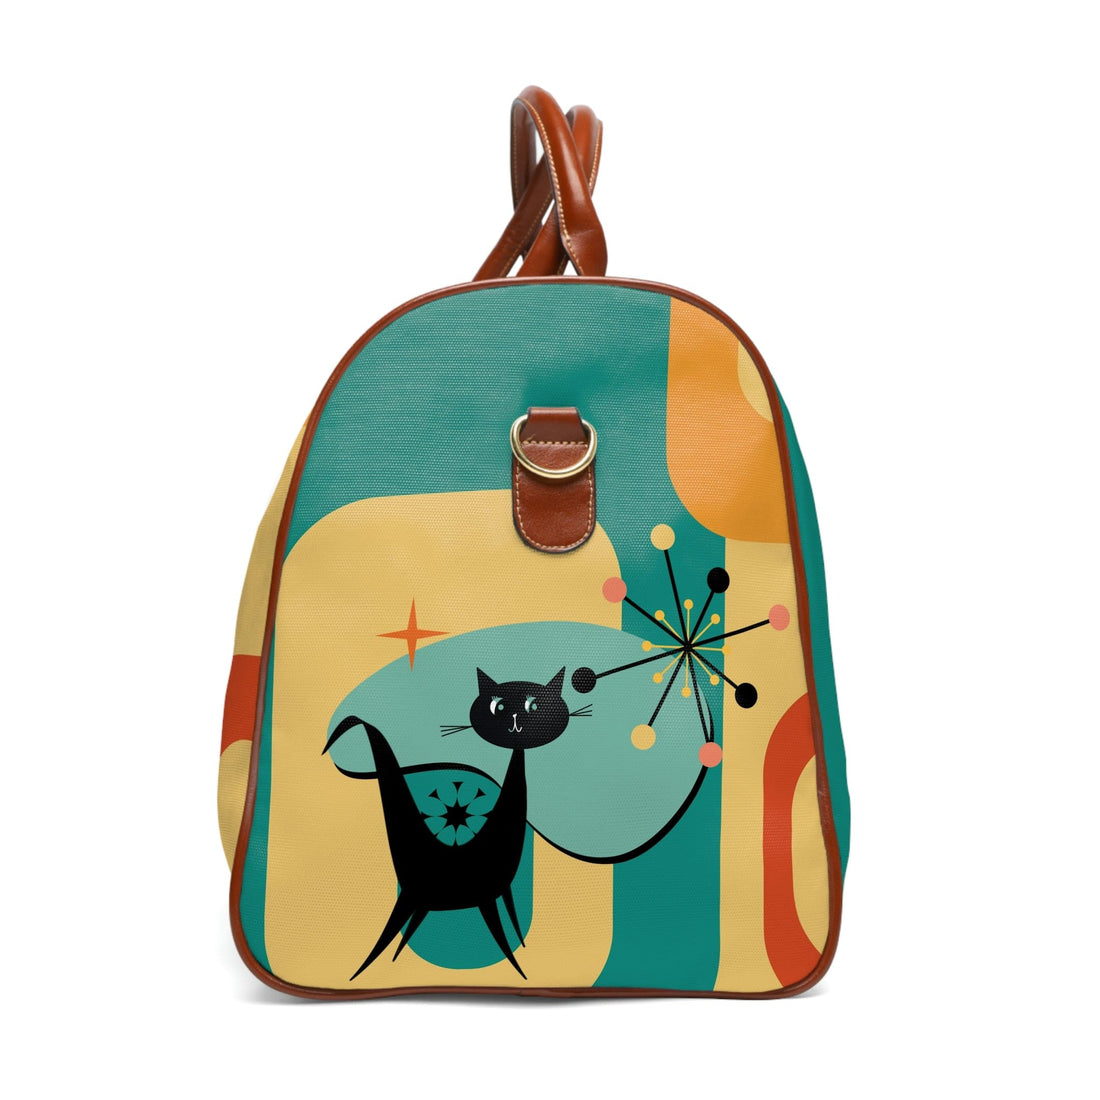 Atomic Cat, Mid Century Modern, Luggage, Travel Bag, Weekender